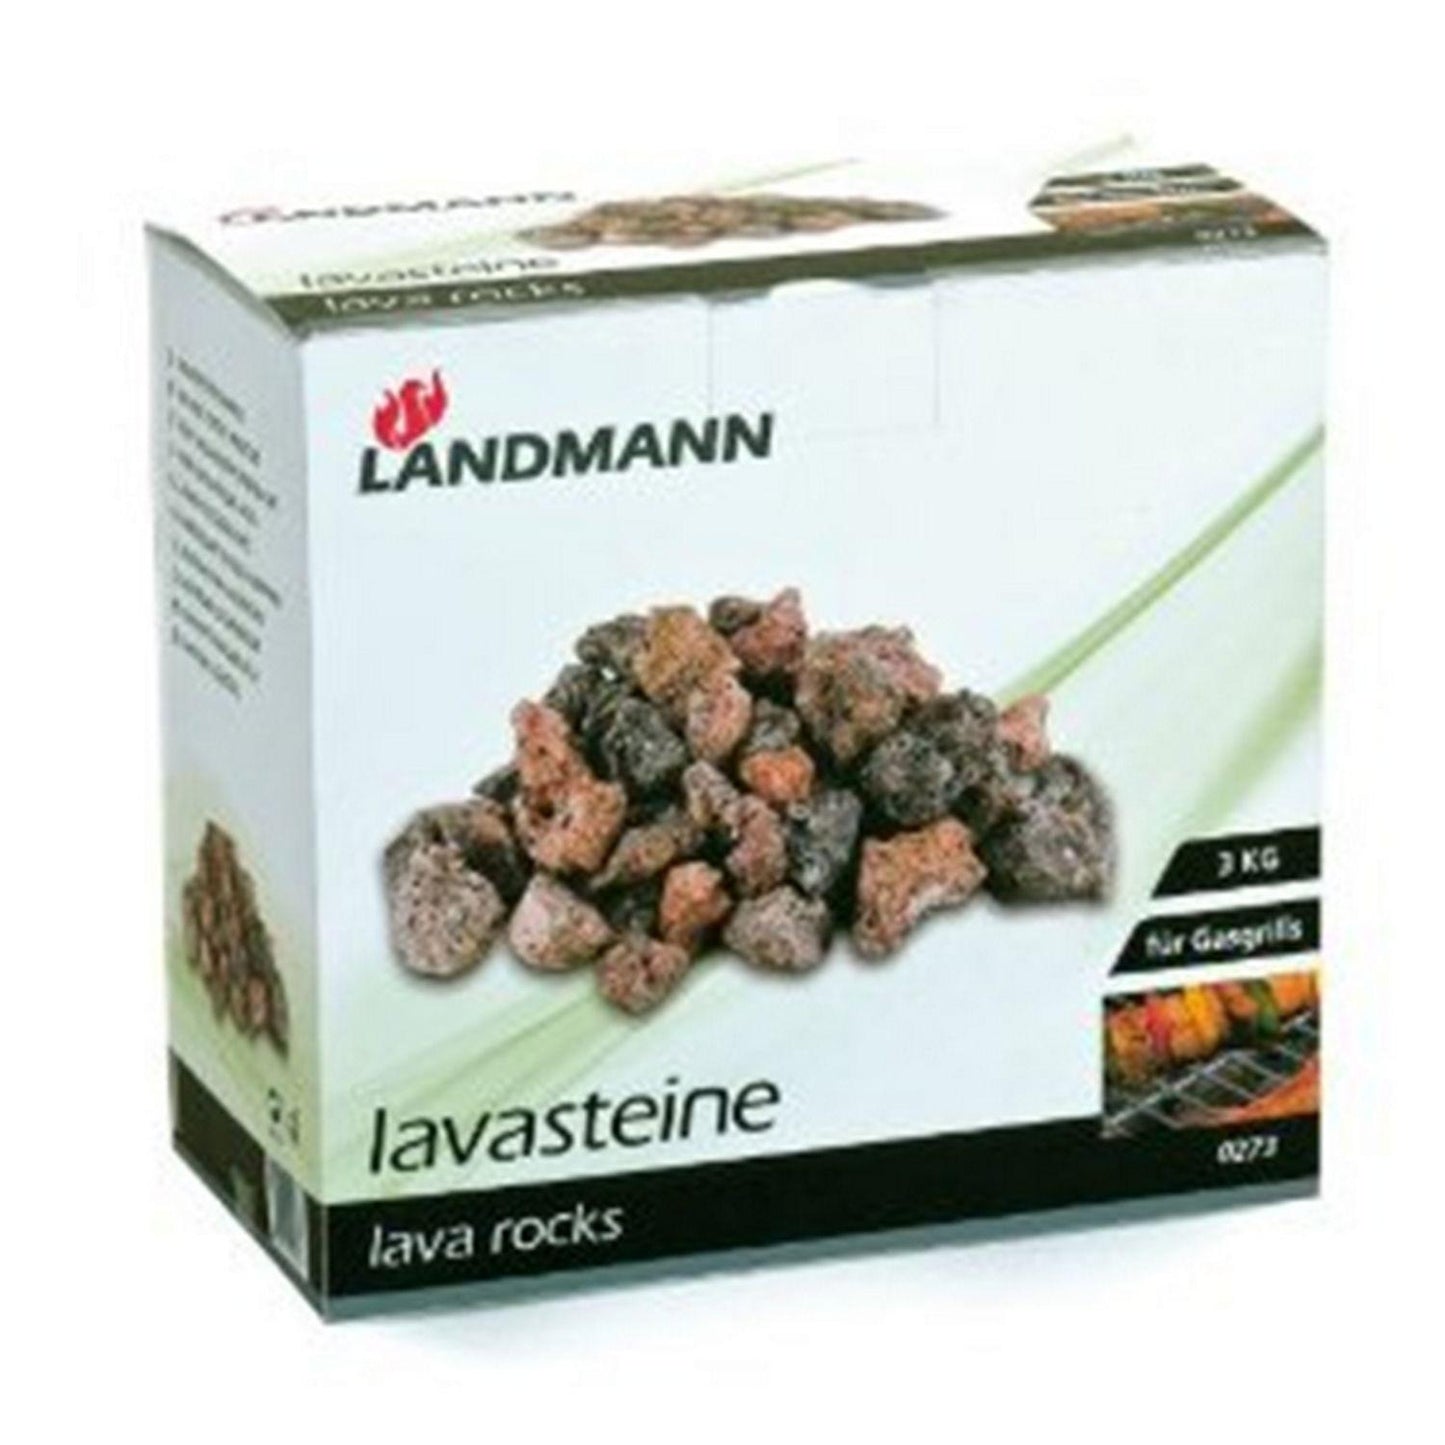 3kg BBQ Lava Rocks Landmann 0273 - BBQ Land